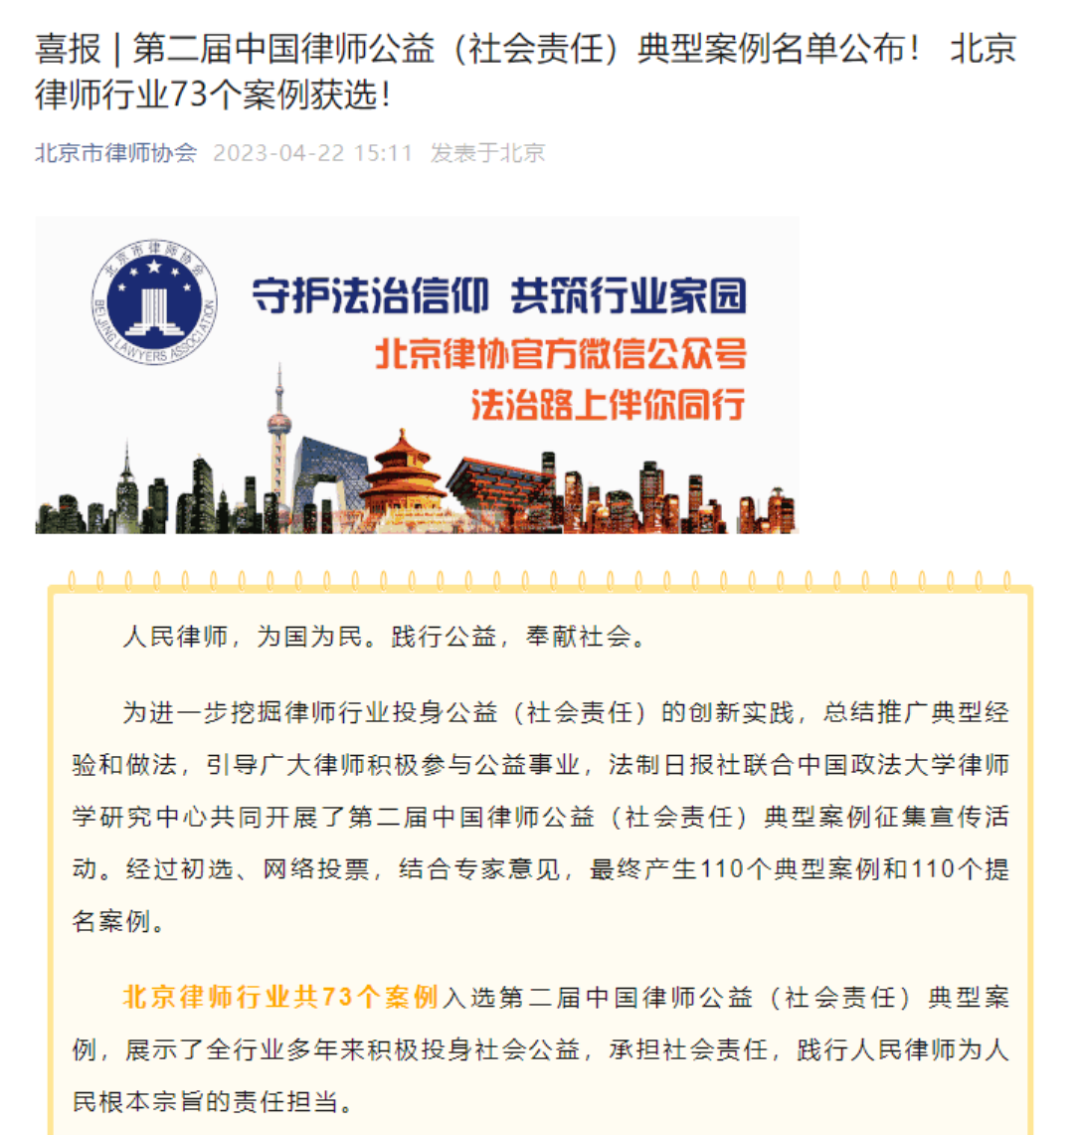 隆安荣誉｜隆安律所公益案例入选第二届中国律师公益（社会责任）典型案例